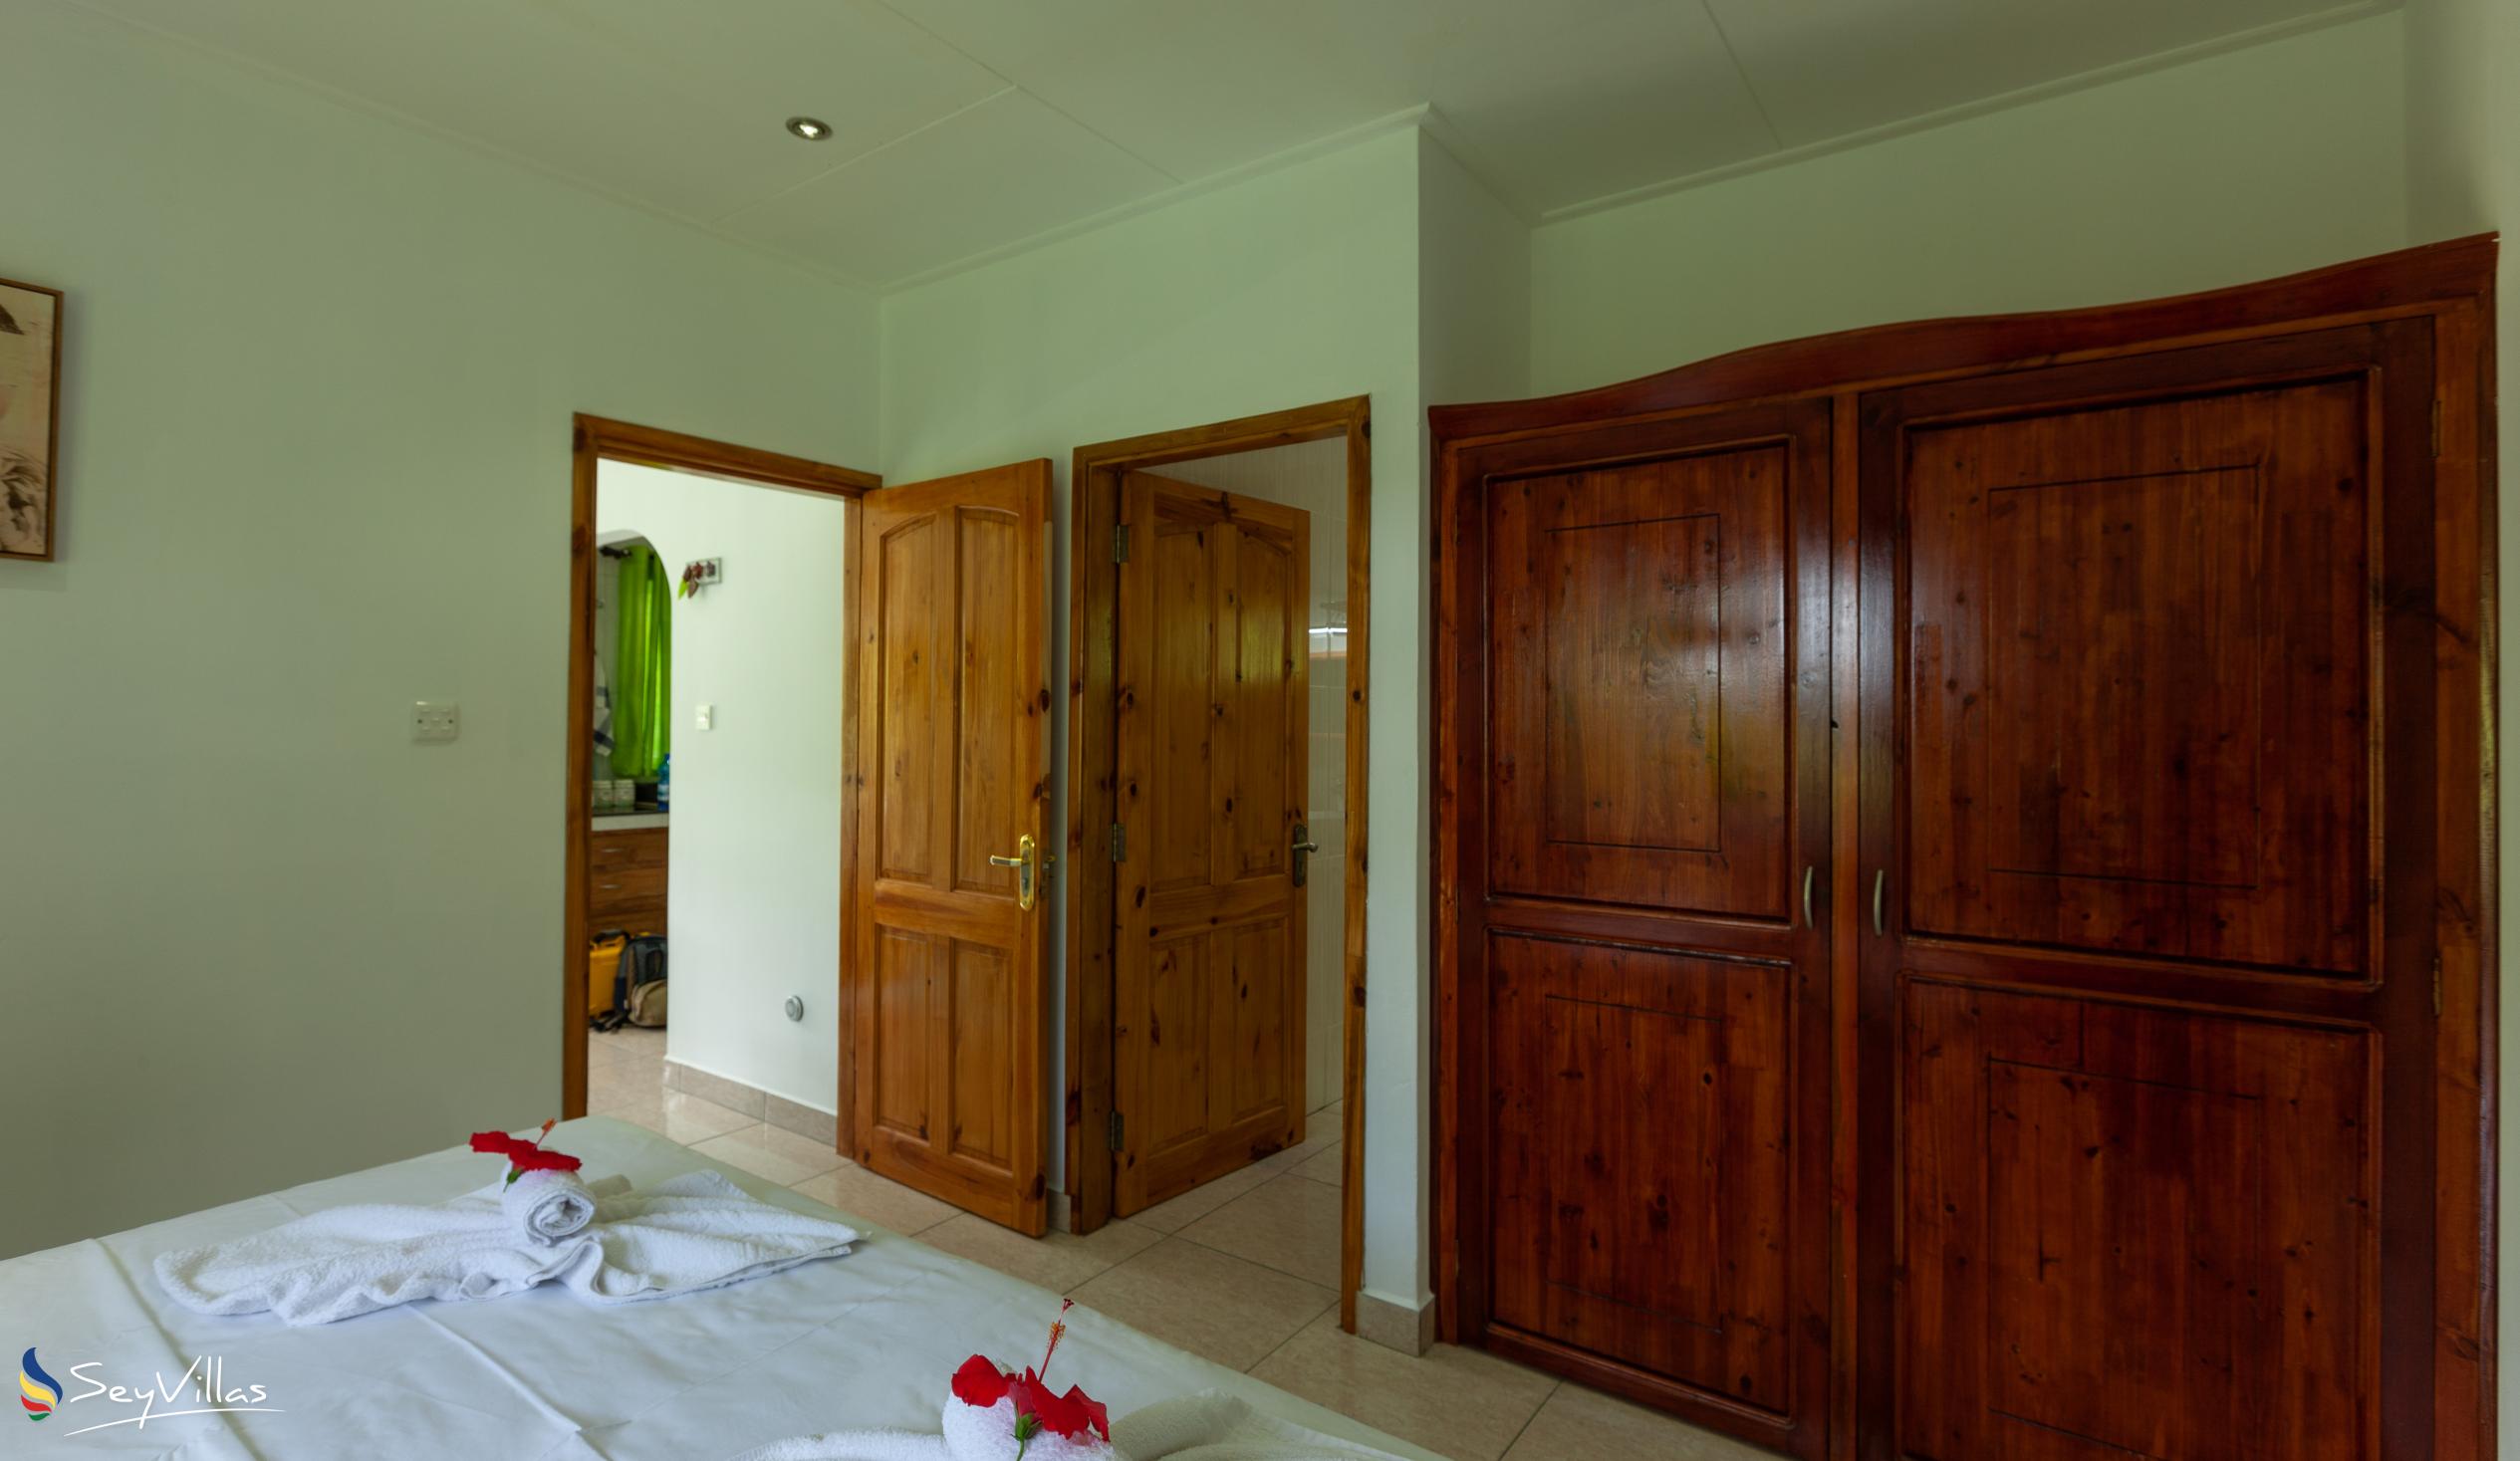 Foto 26: Destination Self-Catering - Villa mit 1 Schlafzimmer - Praslin (Seychellen)